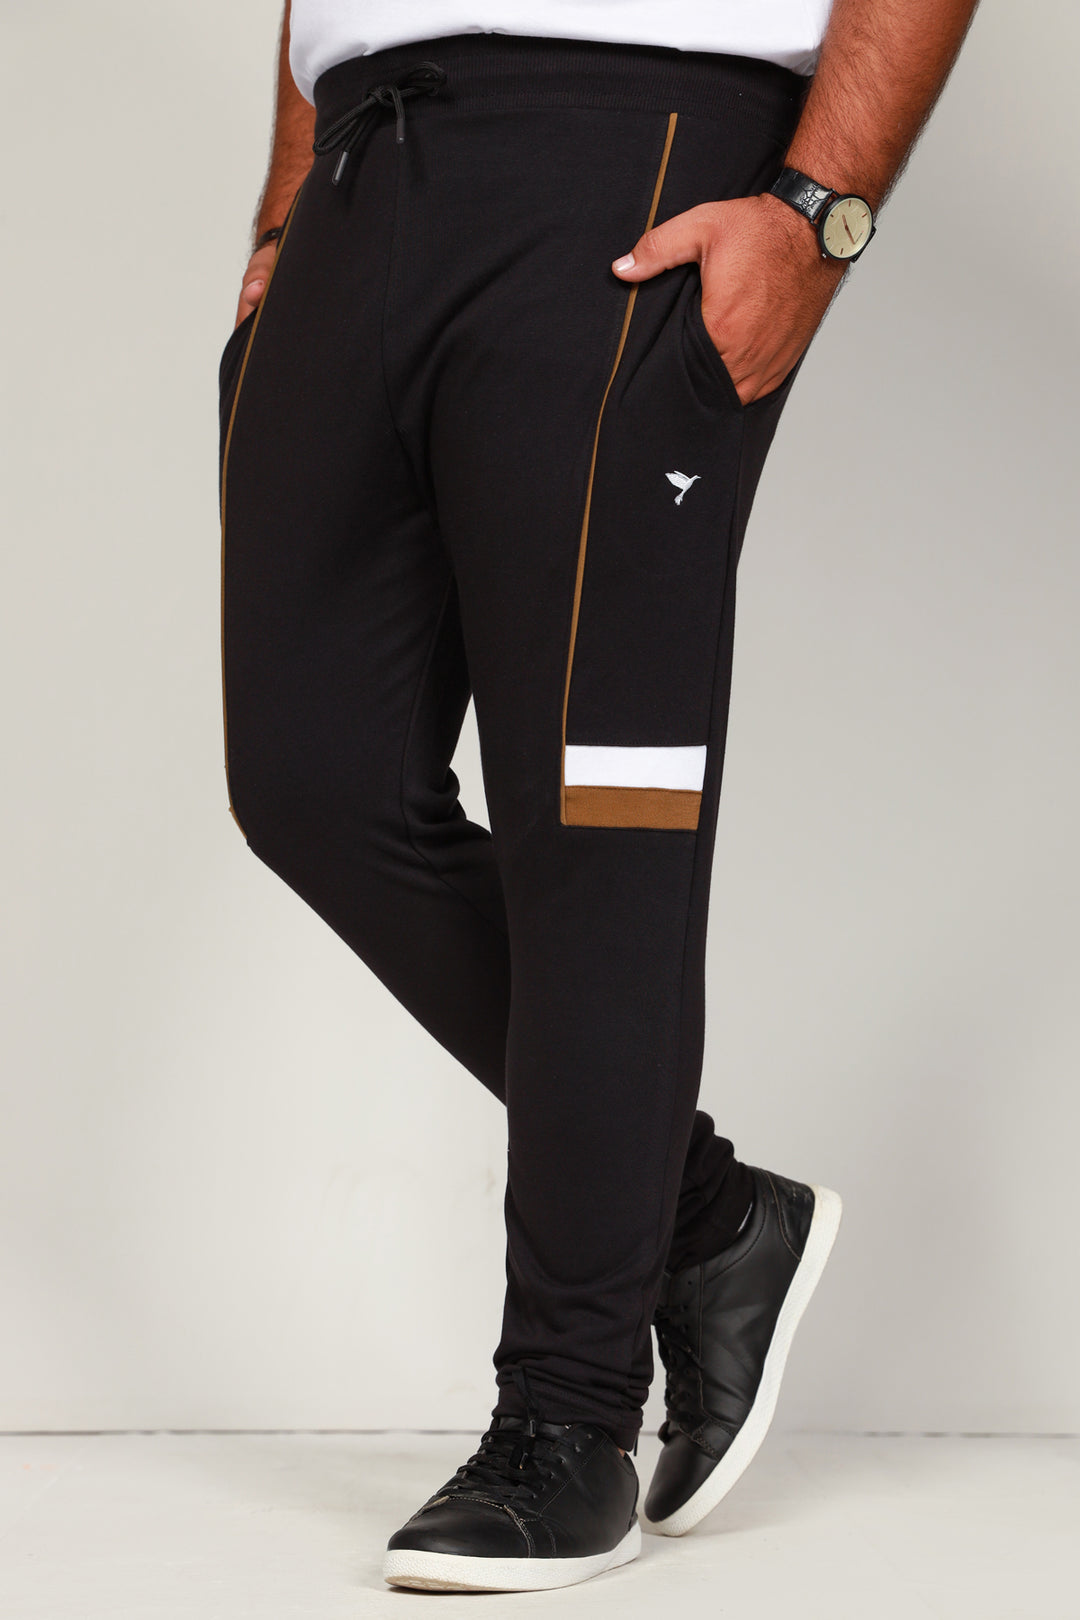 Jet Black Panelled Trouser (Plus Size) - S22 - MTR045P